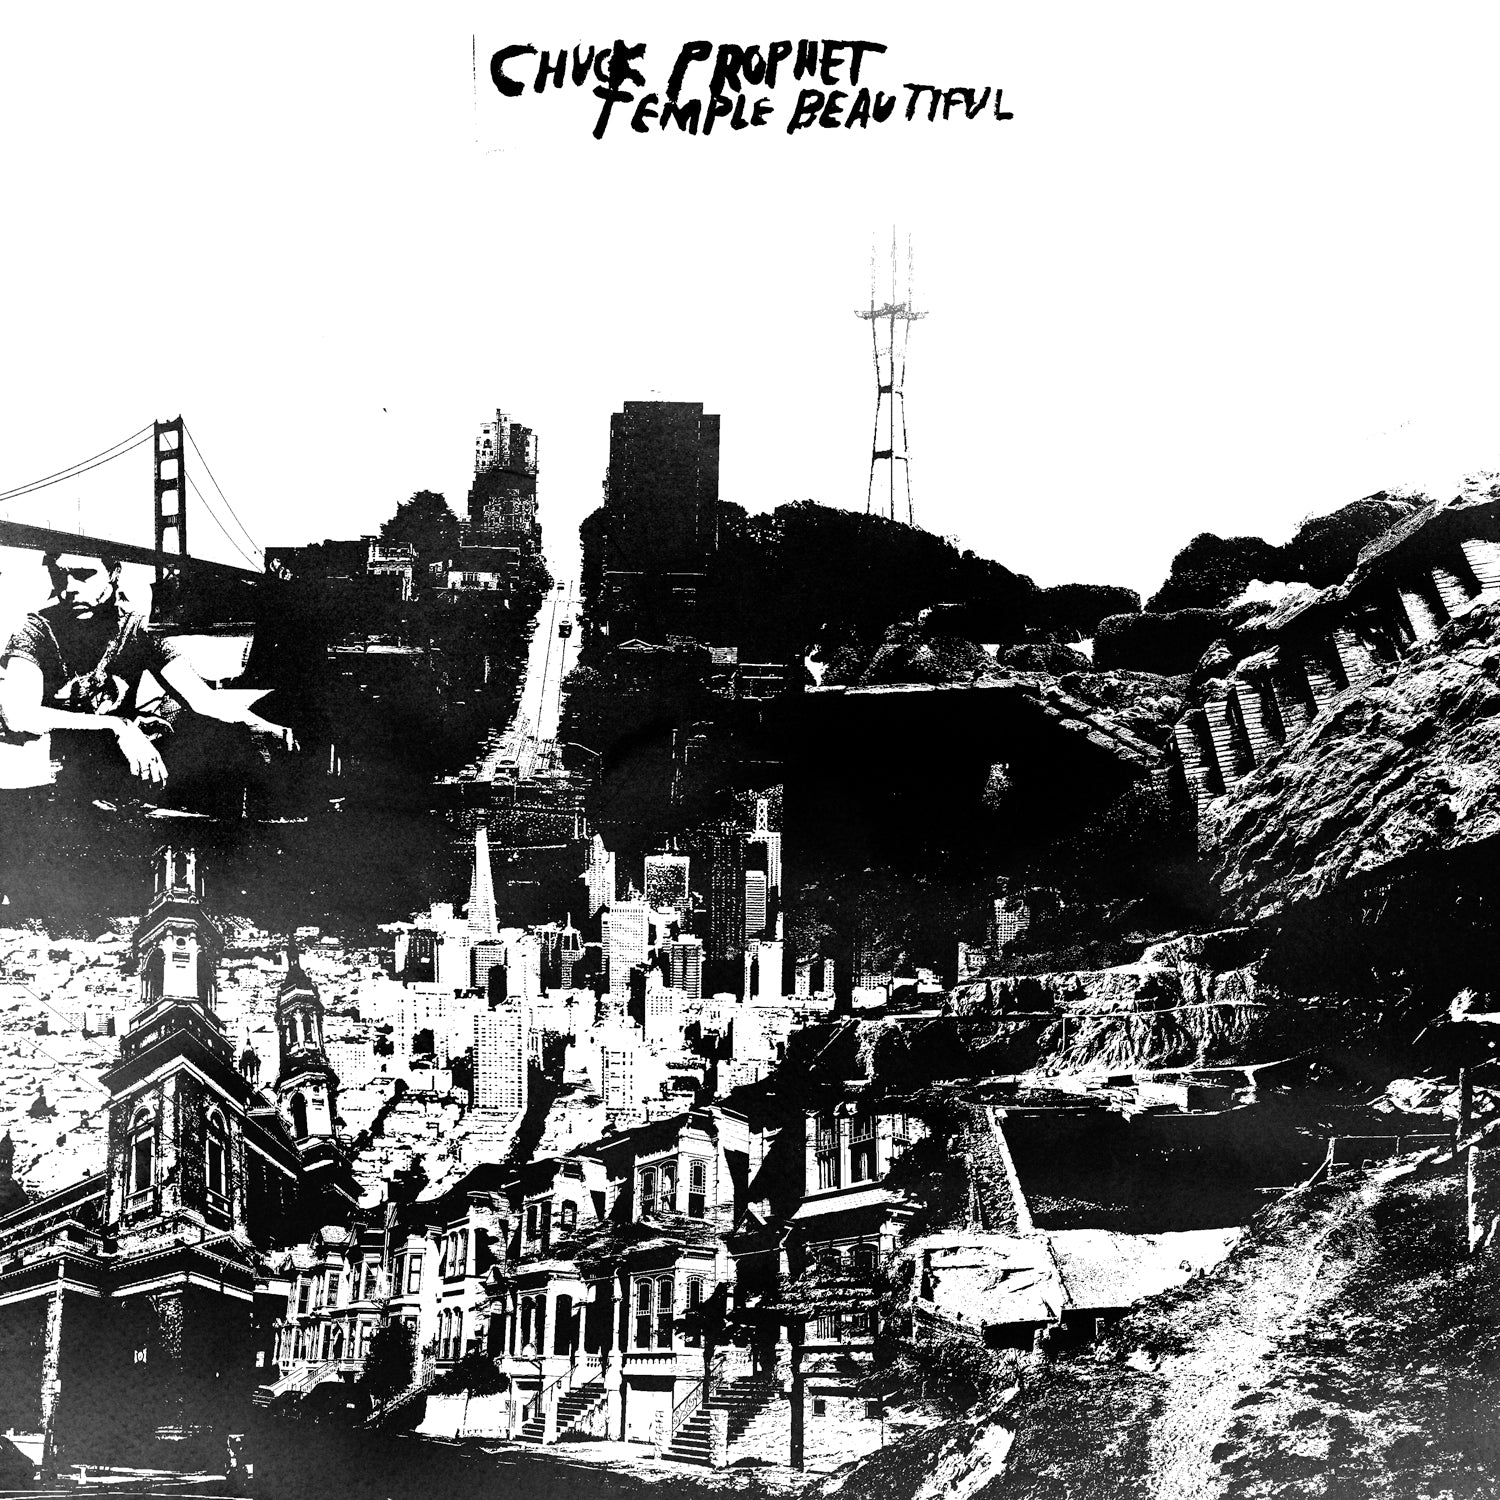 Chuck Prophet | Temple Beautiful | Vinyl